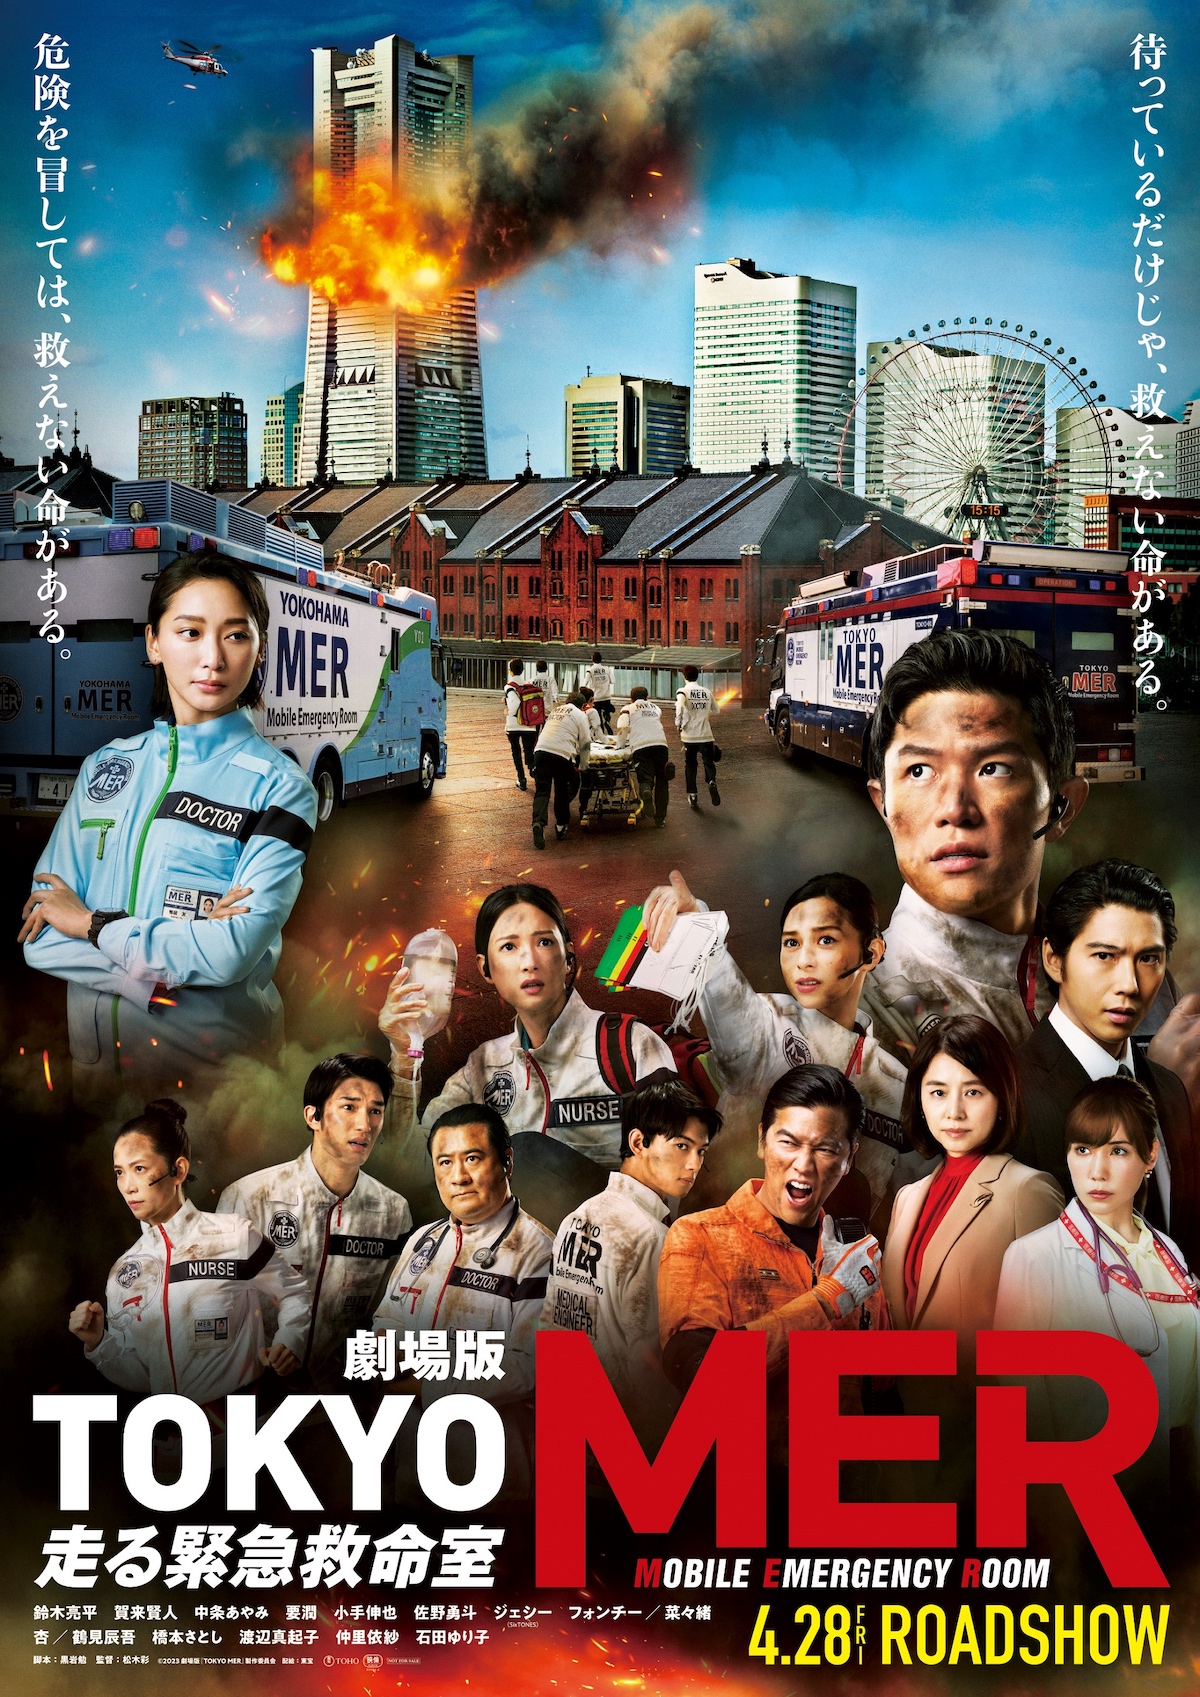 劇場版『TOKYO MER』初ビジュアル